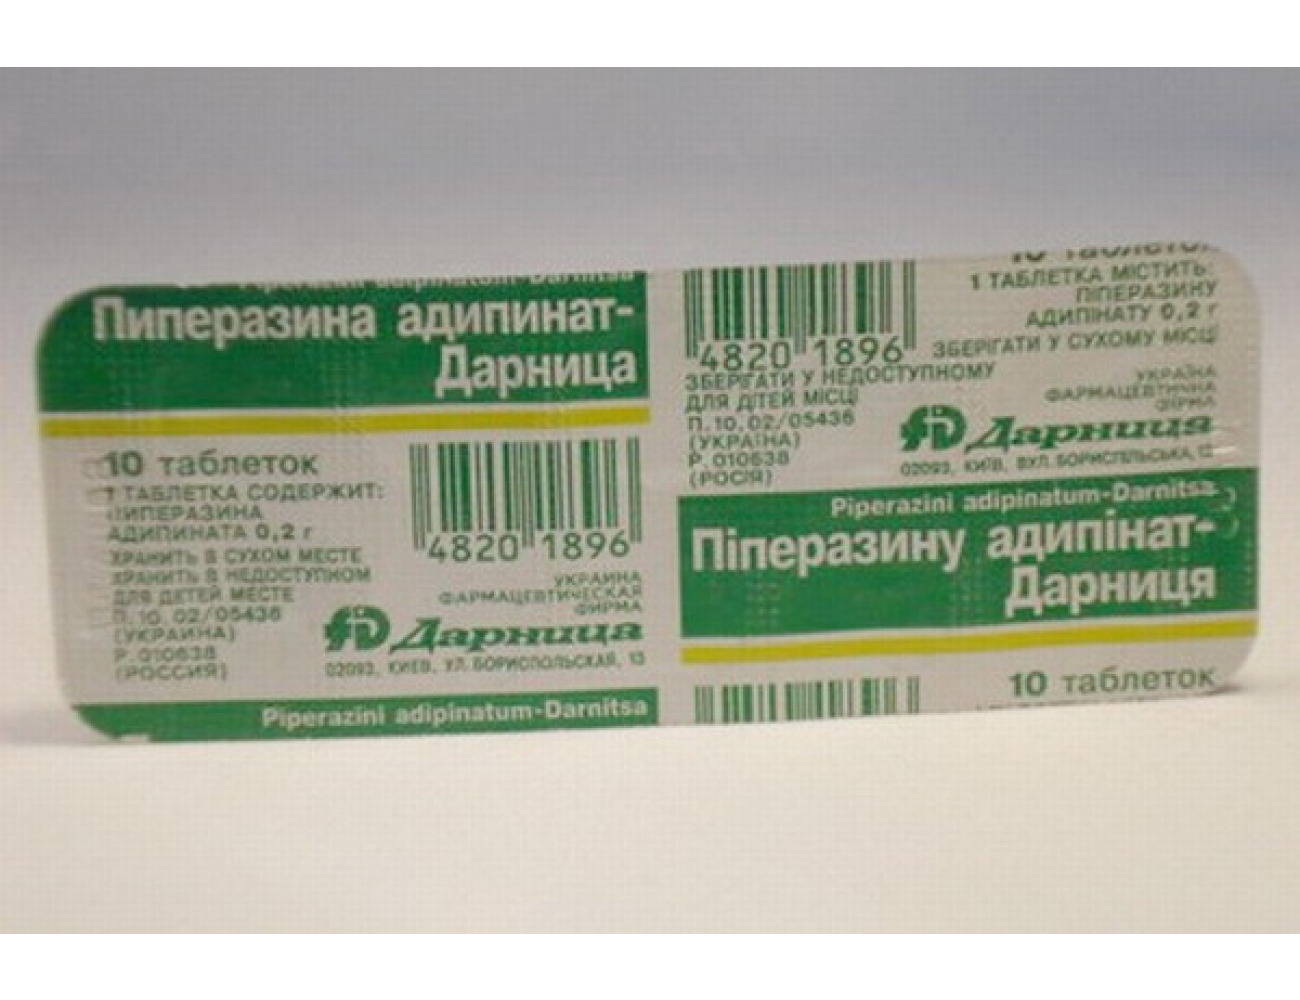 Упаковка Пиперазин